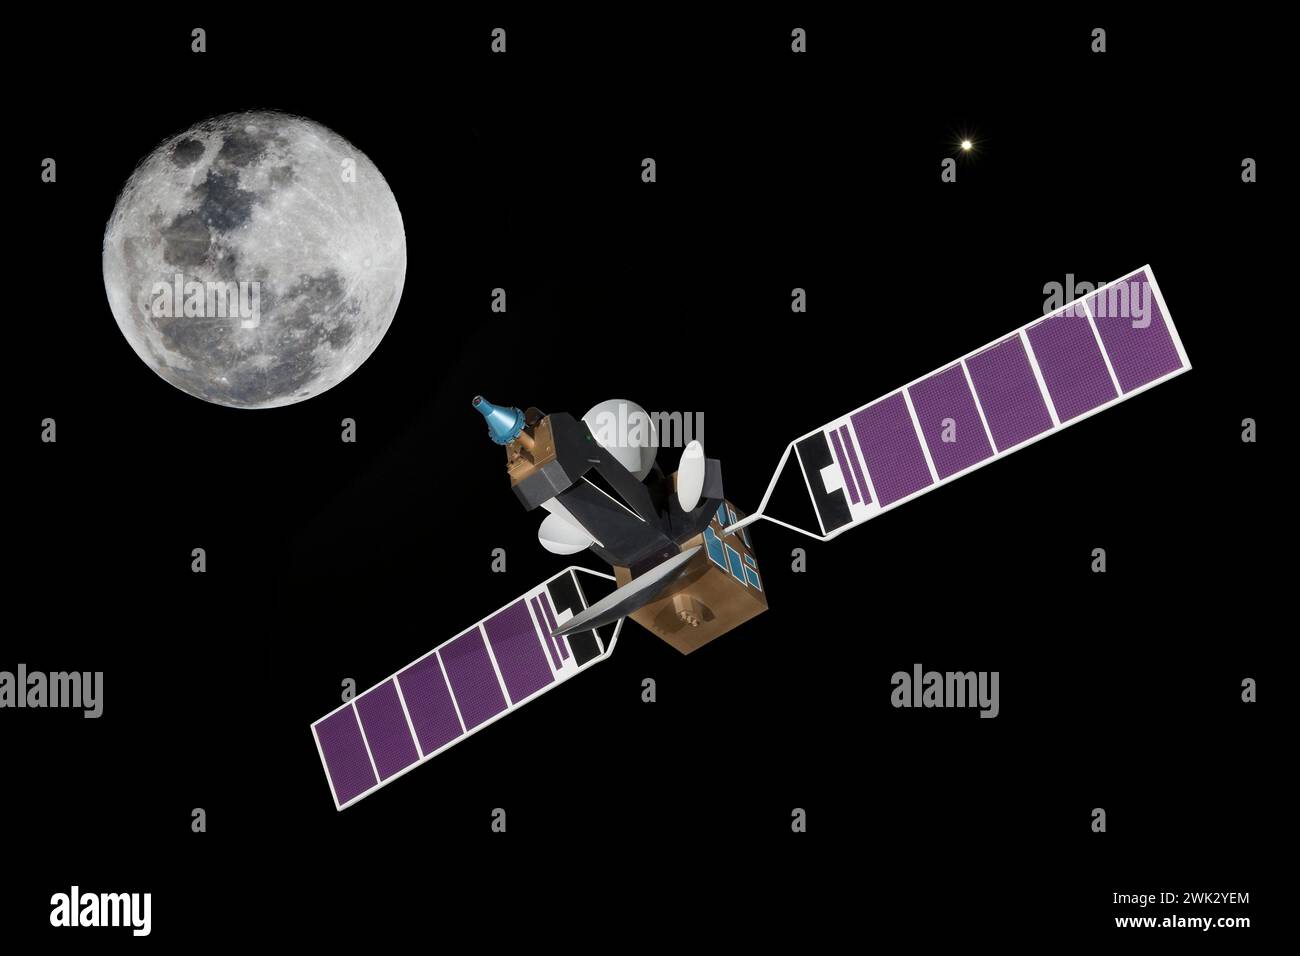 Modelo: El primer satélite comercial de telecomunicaciones INTELSAT 5 sobre el planeta Tierra + Lobo Luna y Júpiter. Creada en 1964. Privatizado en 2001 Foto de stock